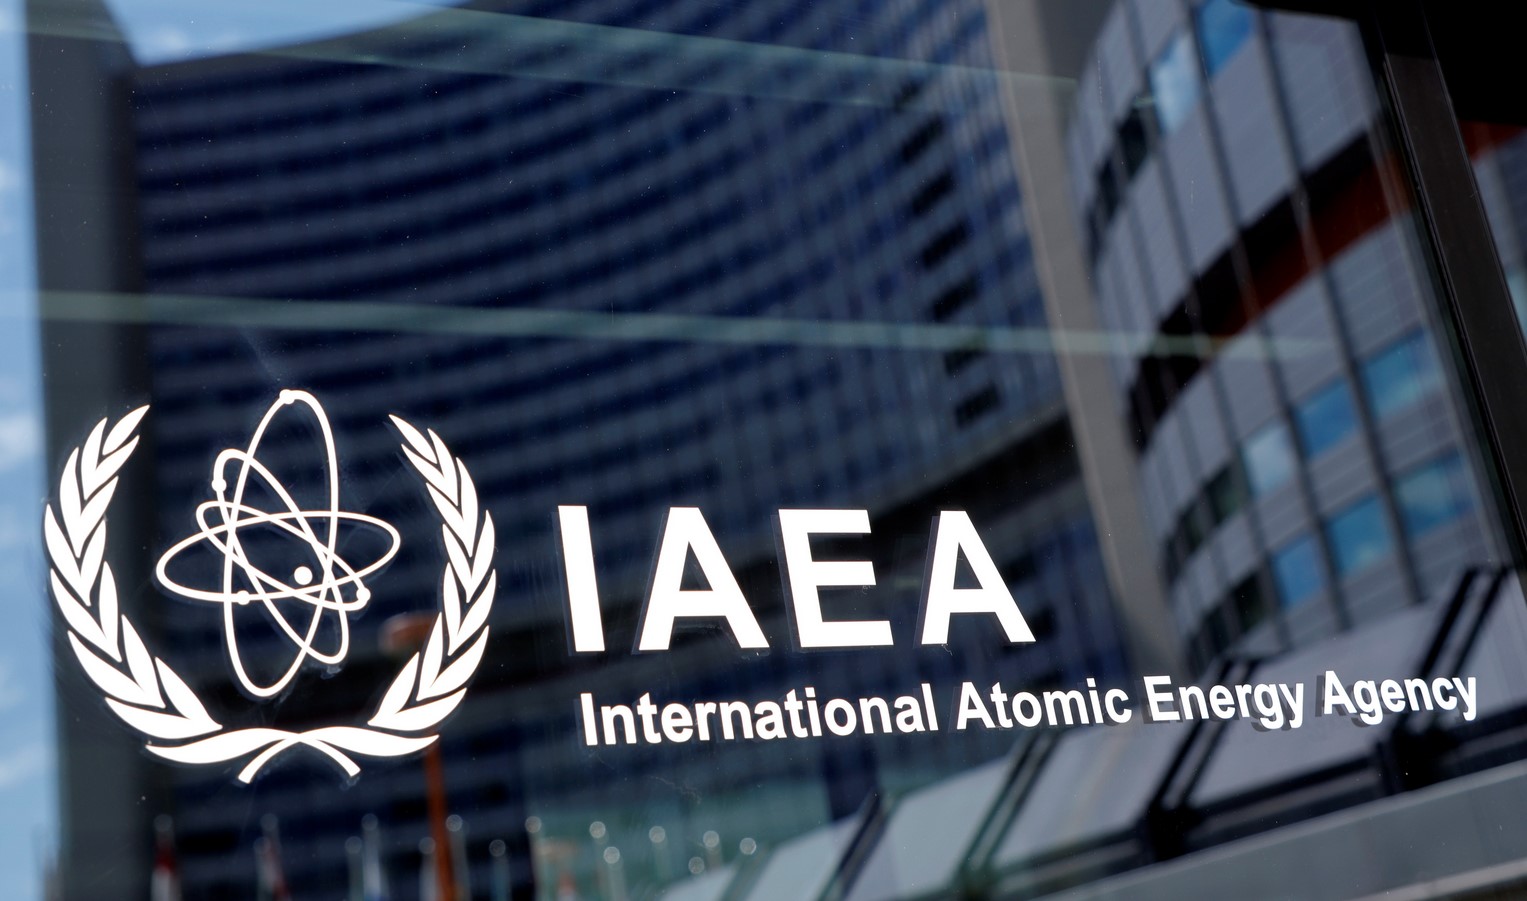 آژانس بین المللی انرژی اتمی گزارشی درباره ایمنی، امنیت و پادمان های هسته ای در اوکراین منتشر کرد